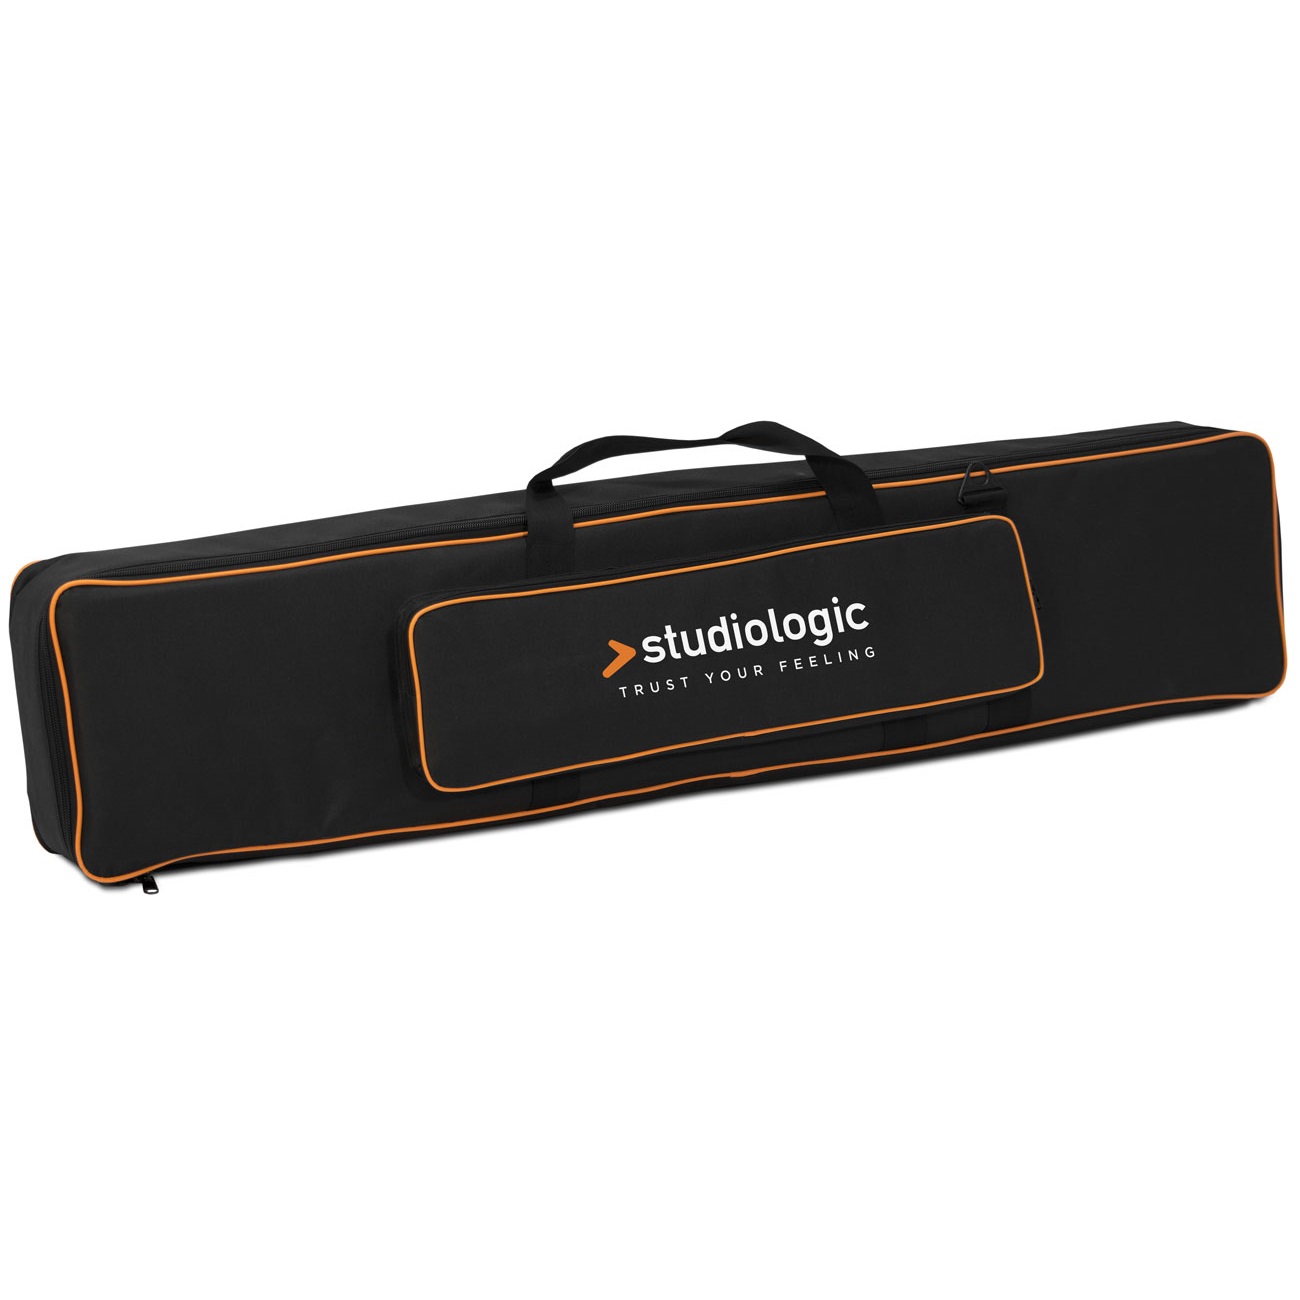 Чехлы и кейсы для клавишных Studiologic Soft Case Size B чехлы и кейсы для клавишных dexibell s9 s7 pro bag